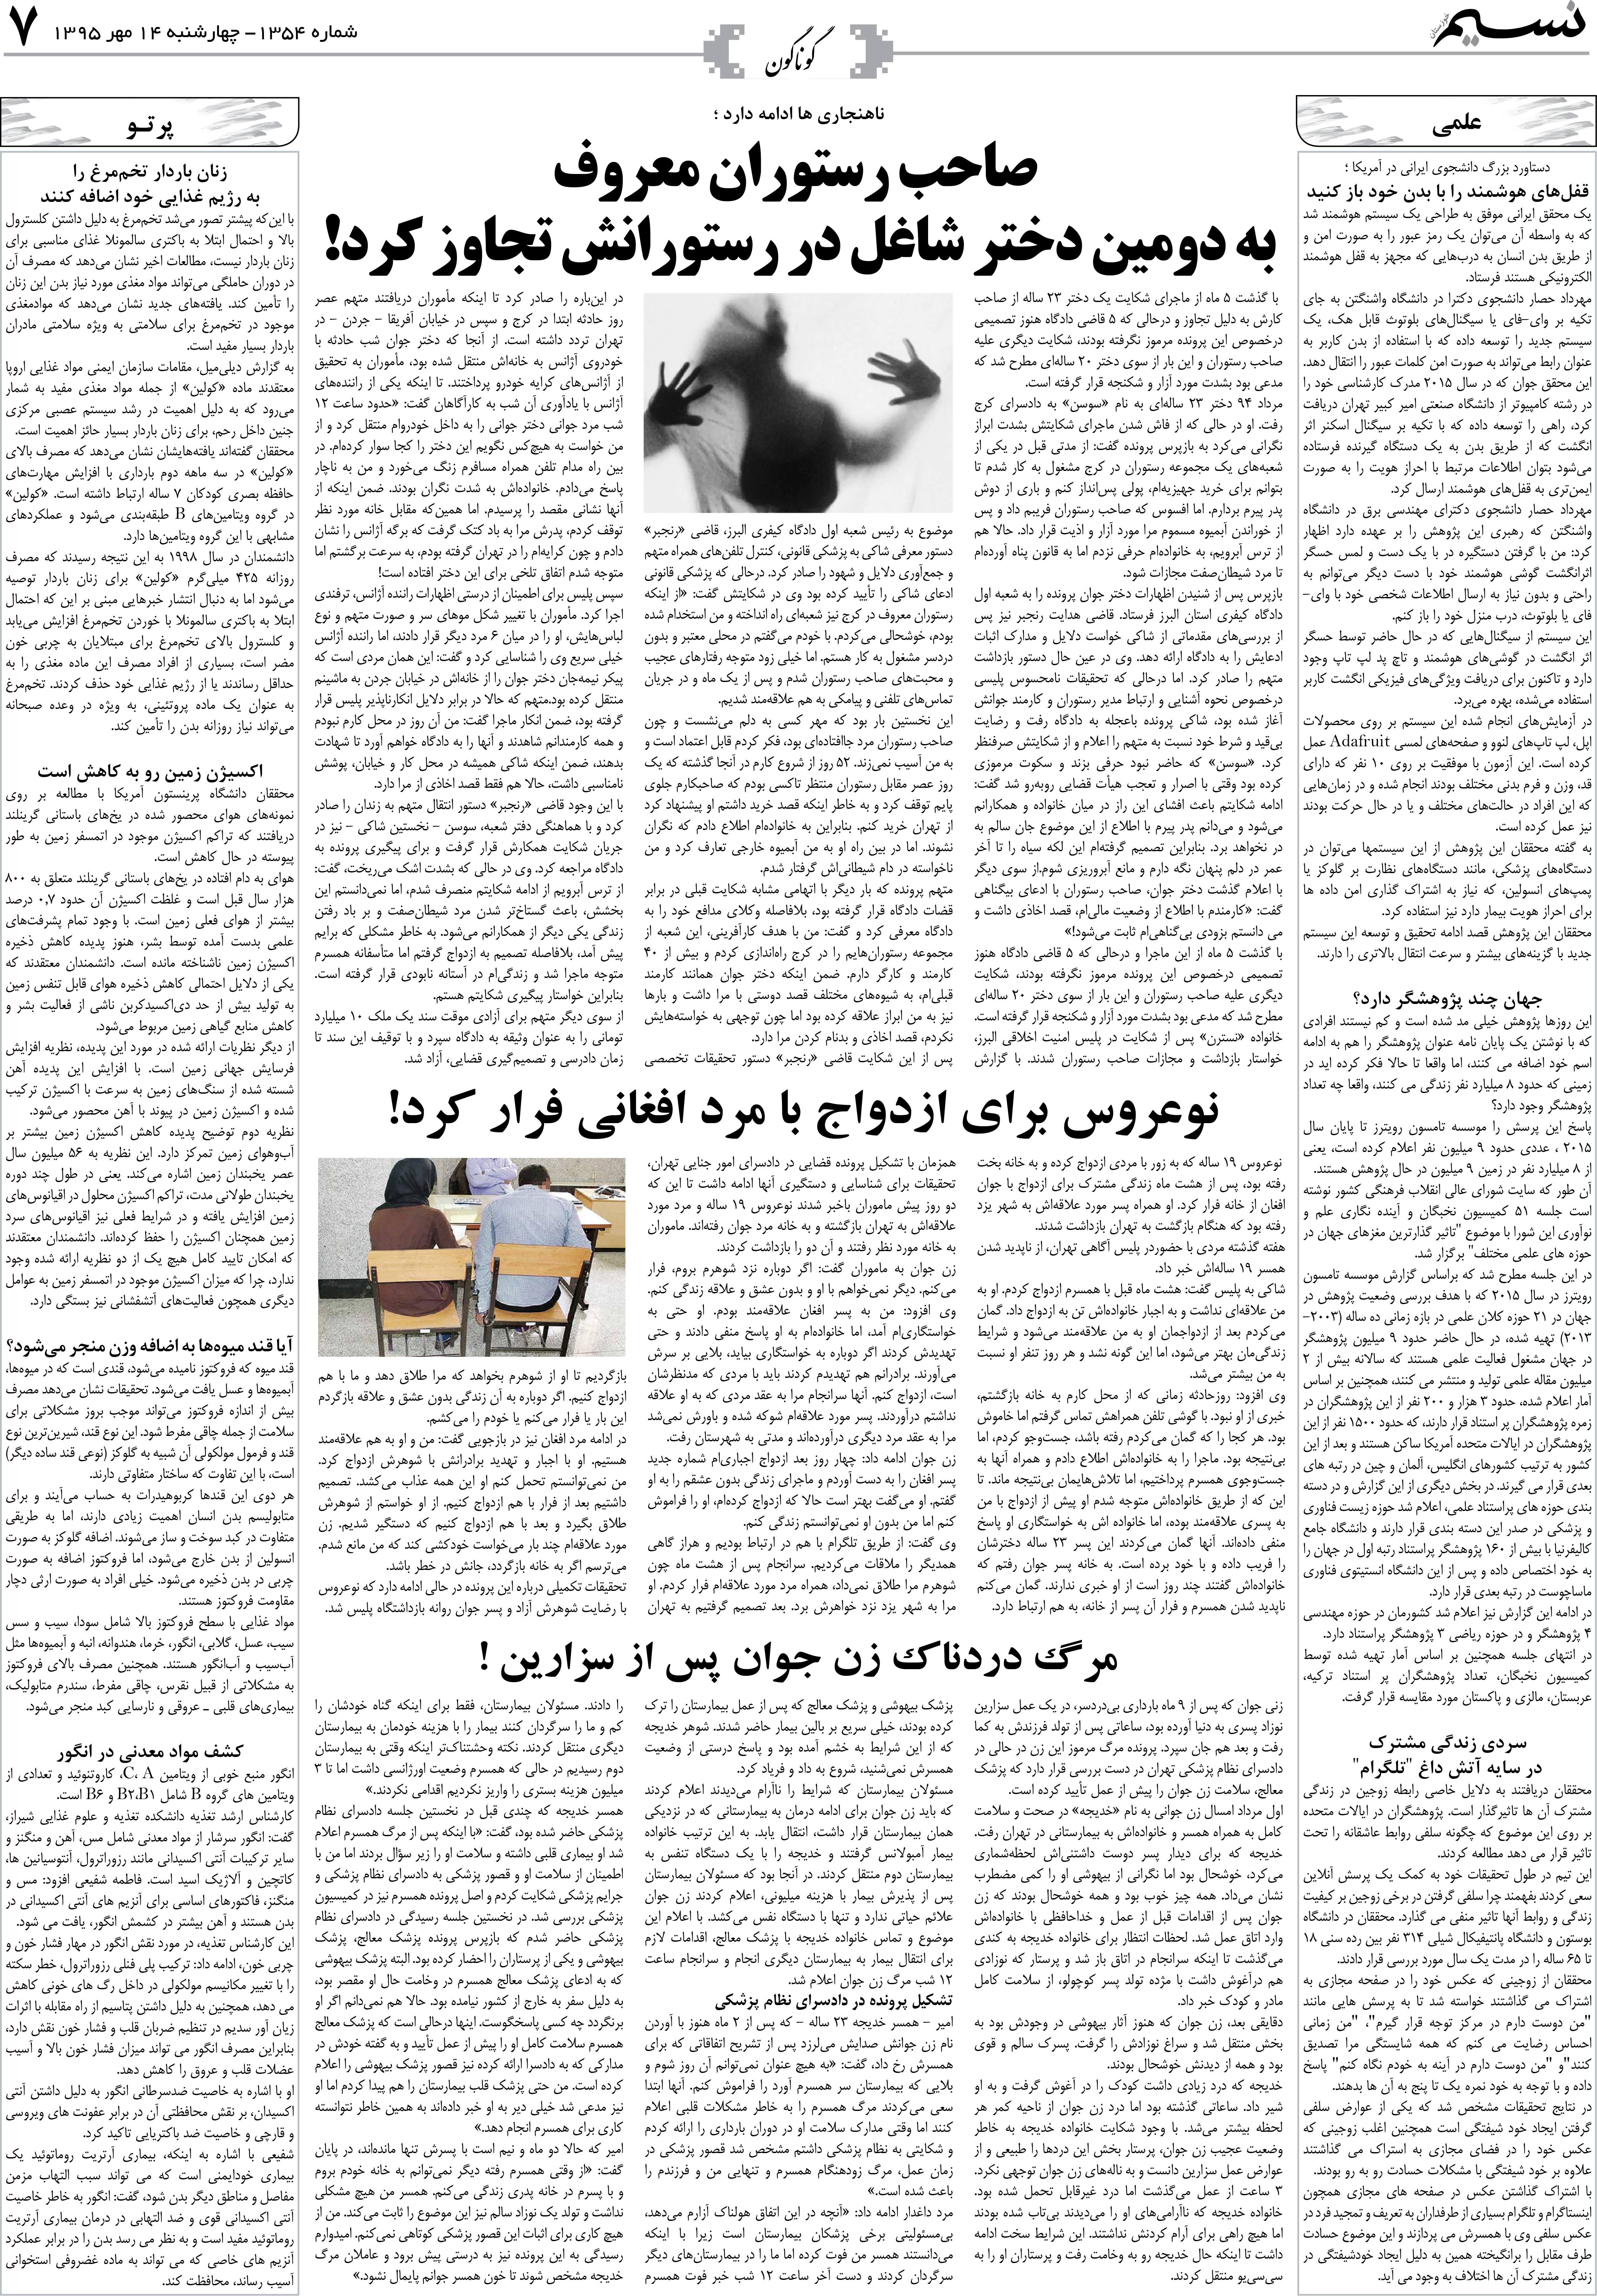 صفحه گوناگون روزنامه نسیم شماره 1354